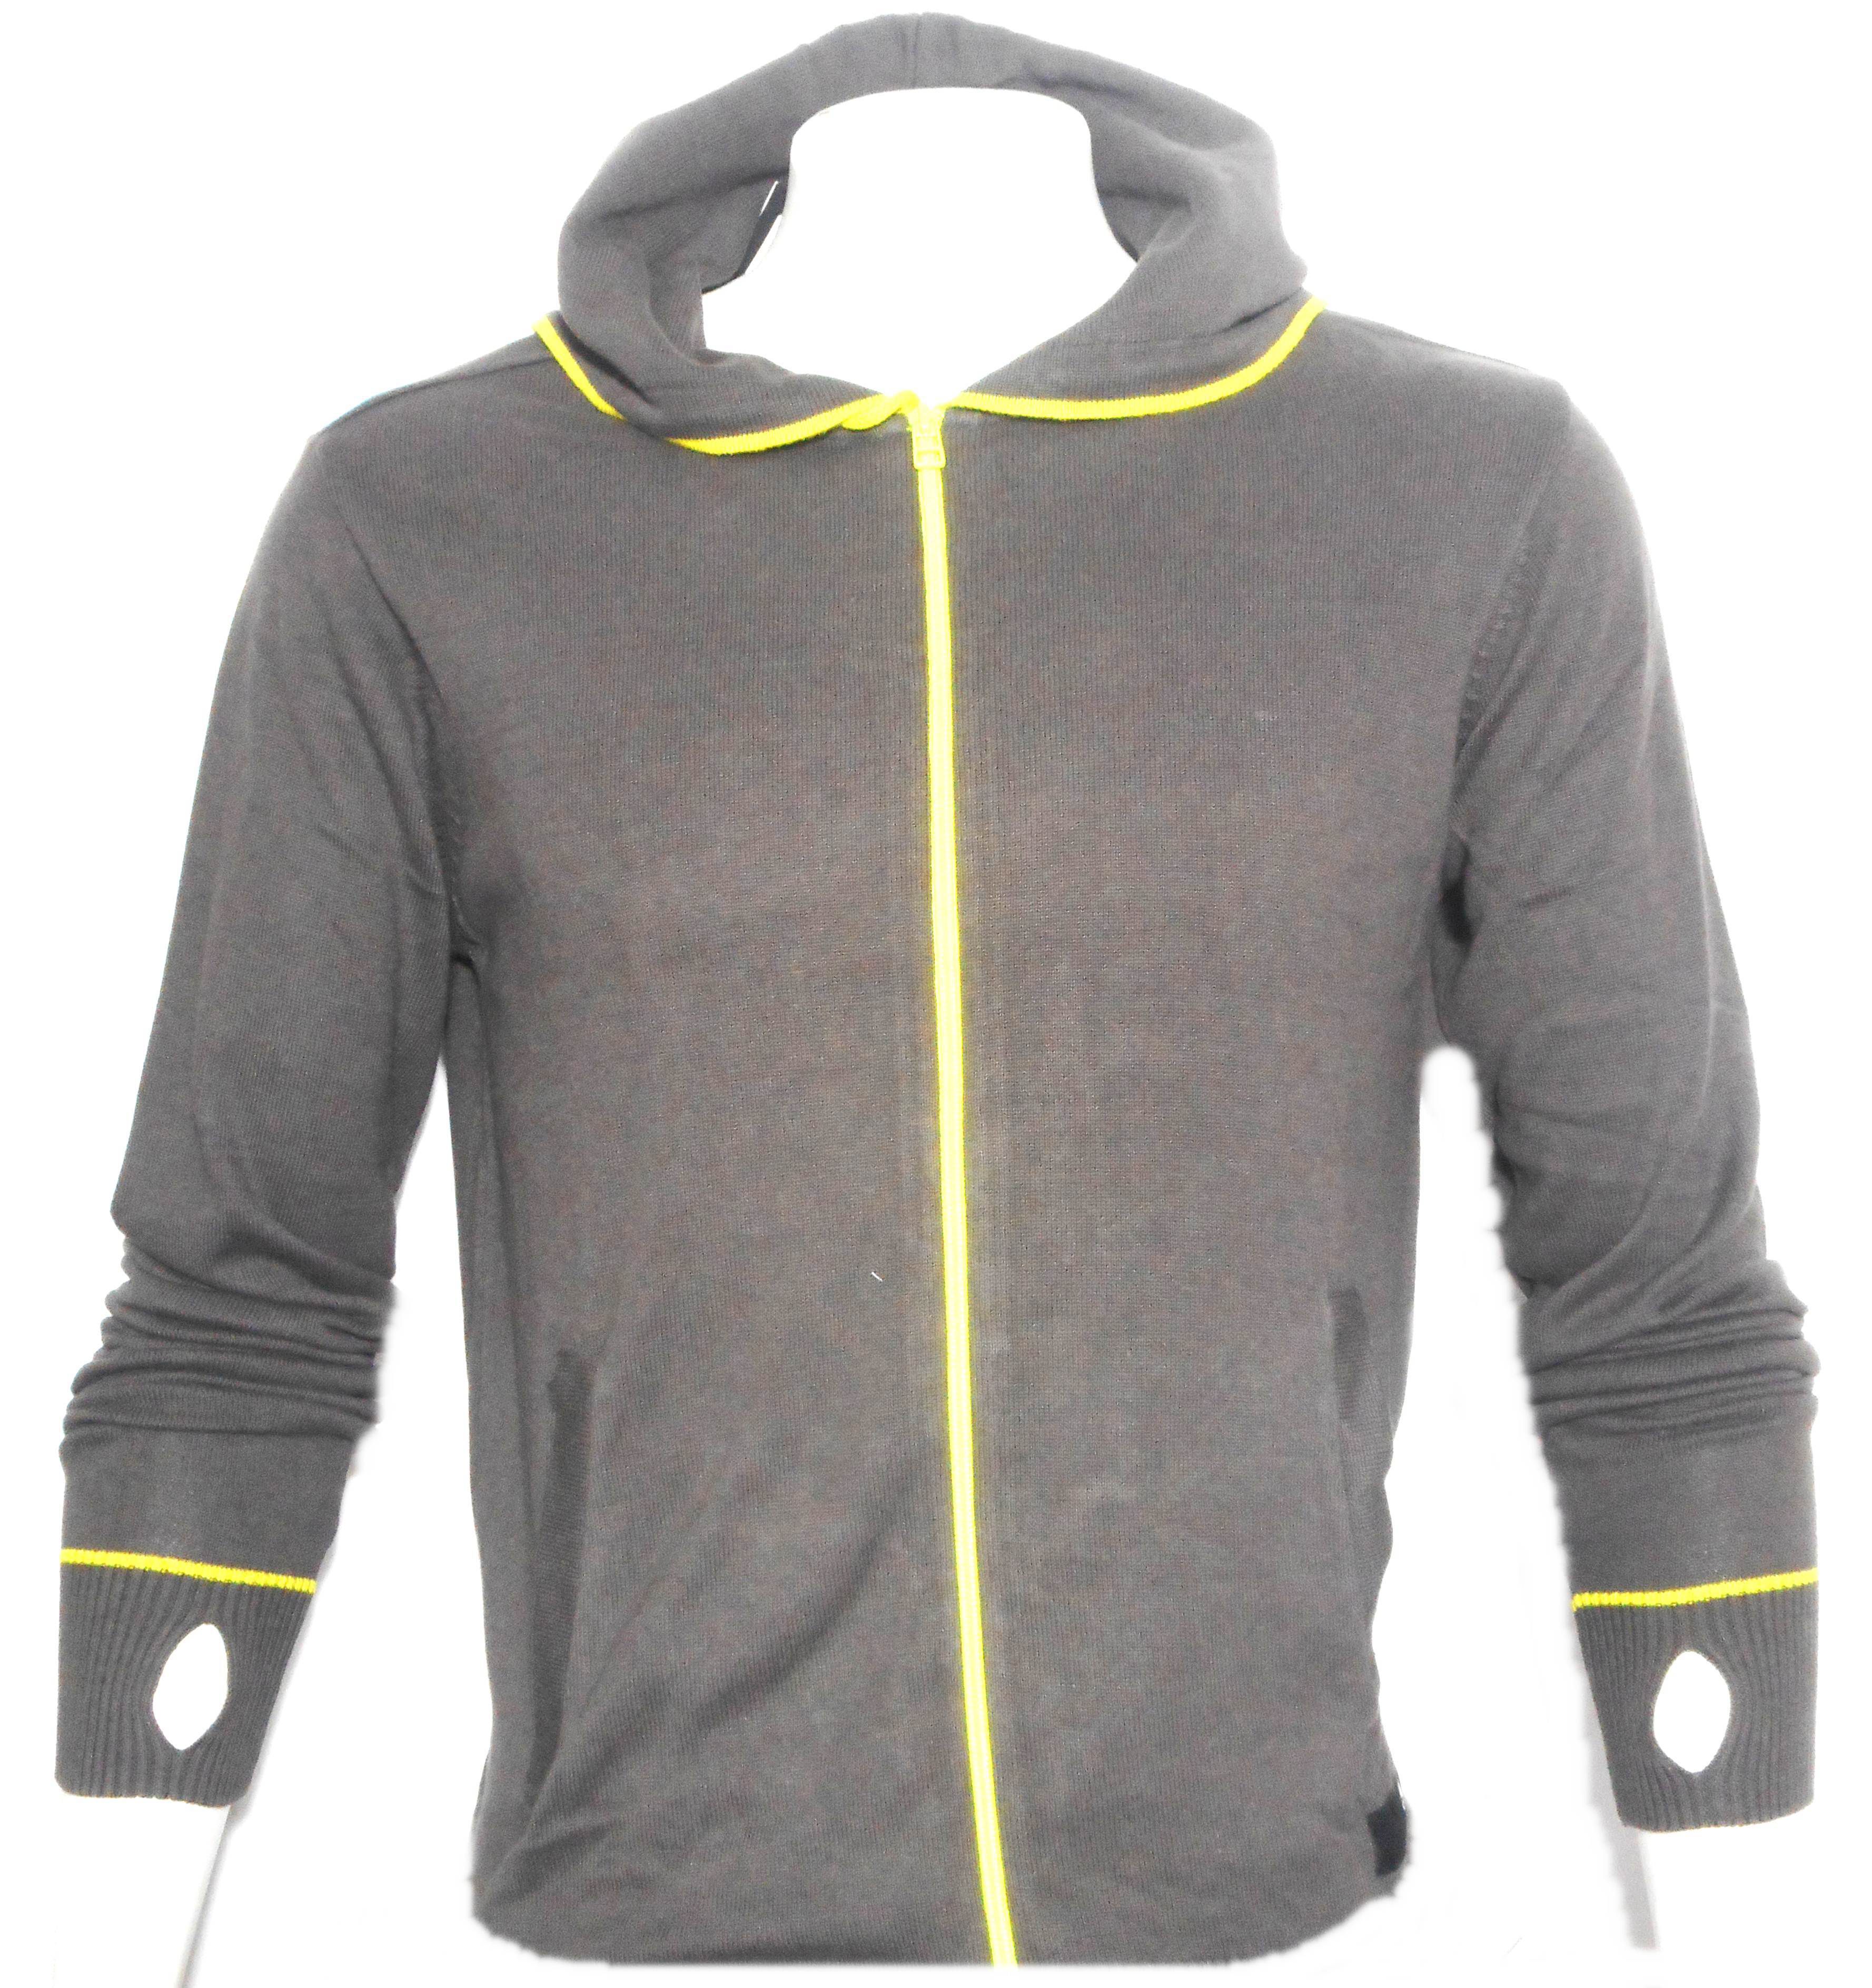 Adidas Grey Hooded Sweatshirt - Buy Adidas Grey Hooded Sweatshirt